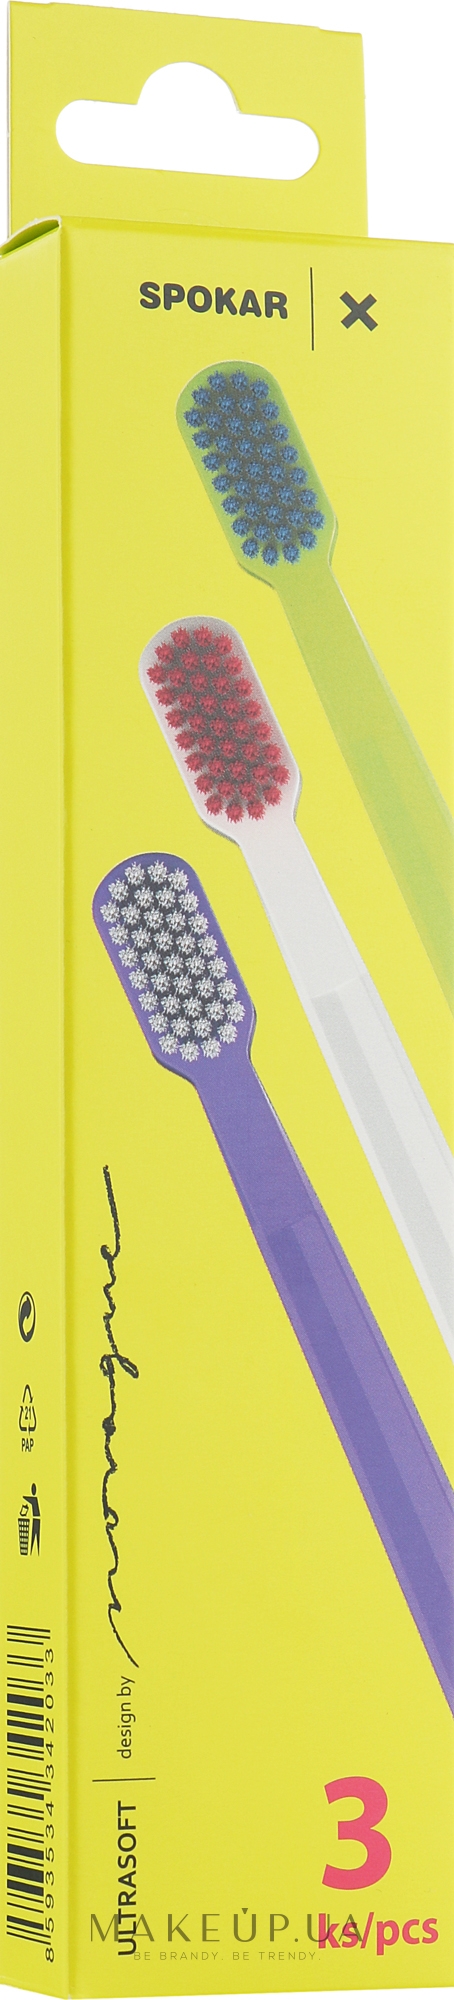 Набор зубных щеток "X", ультрамягких, салатово-голубая + бело-розовая + фиолетово-белая - Spokar X — фото 3шт